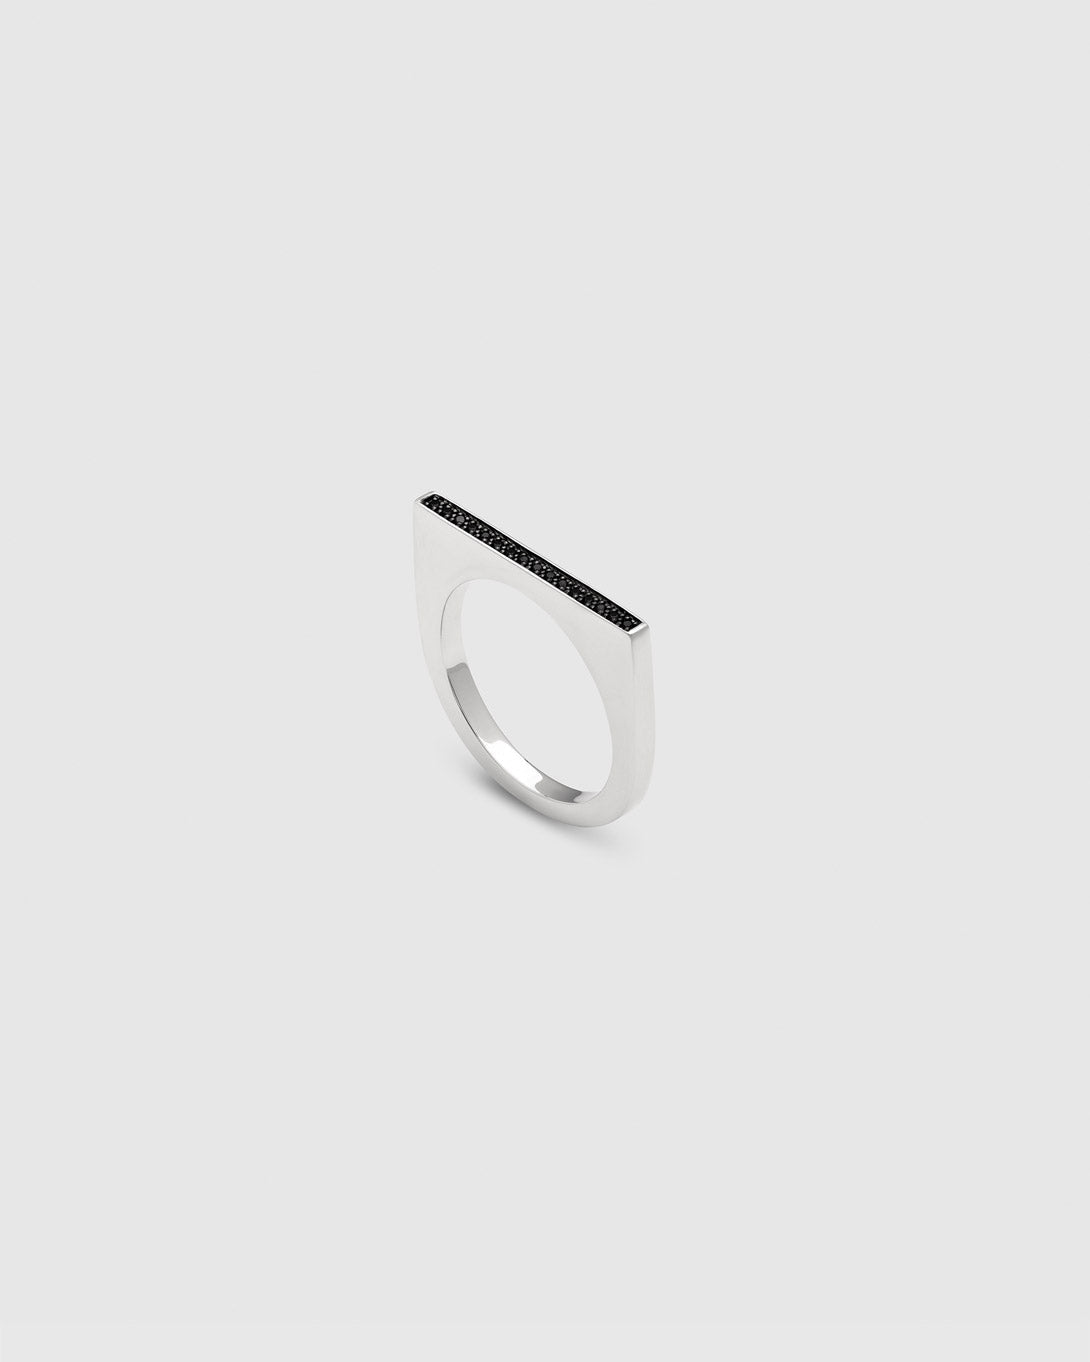 Sleek Ring Top Black Spinel - Jewelry - Tom Wood - Elevastor